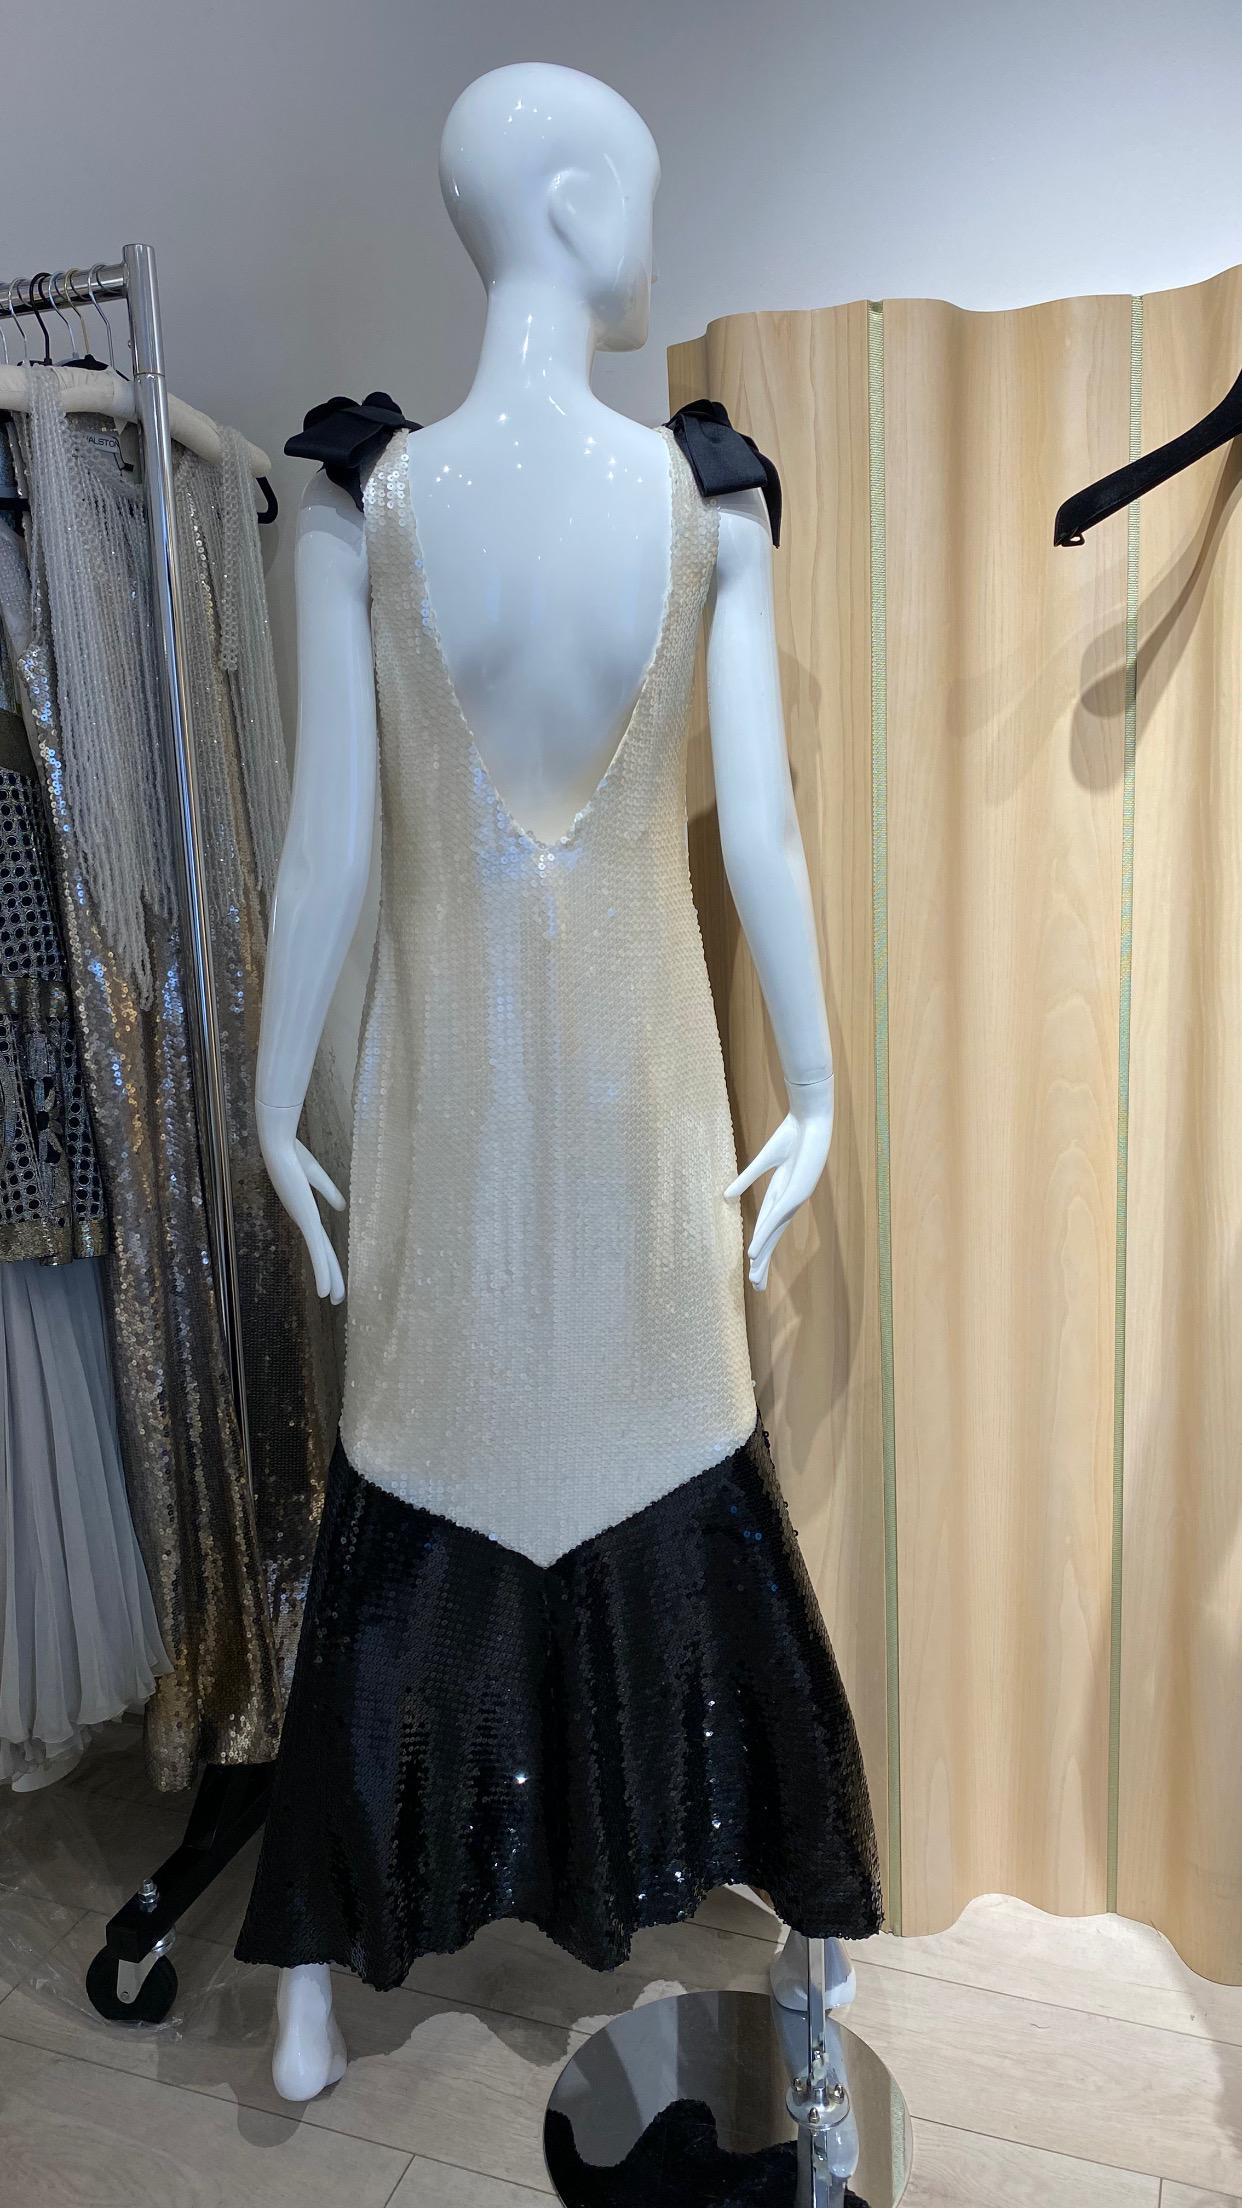 Schöne Vintage Chanel Silber und Schwarz Pailletten Kleid mit Schleifen. Kleid gefüttert mit Seide.
- Hochzeitskleid
- Braut - Black Tie Veranstaltung
Messung:
Büste: 36